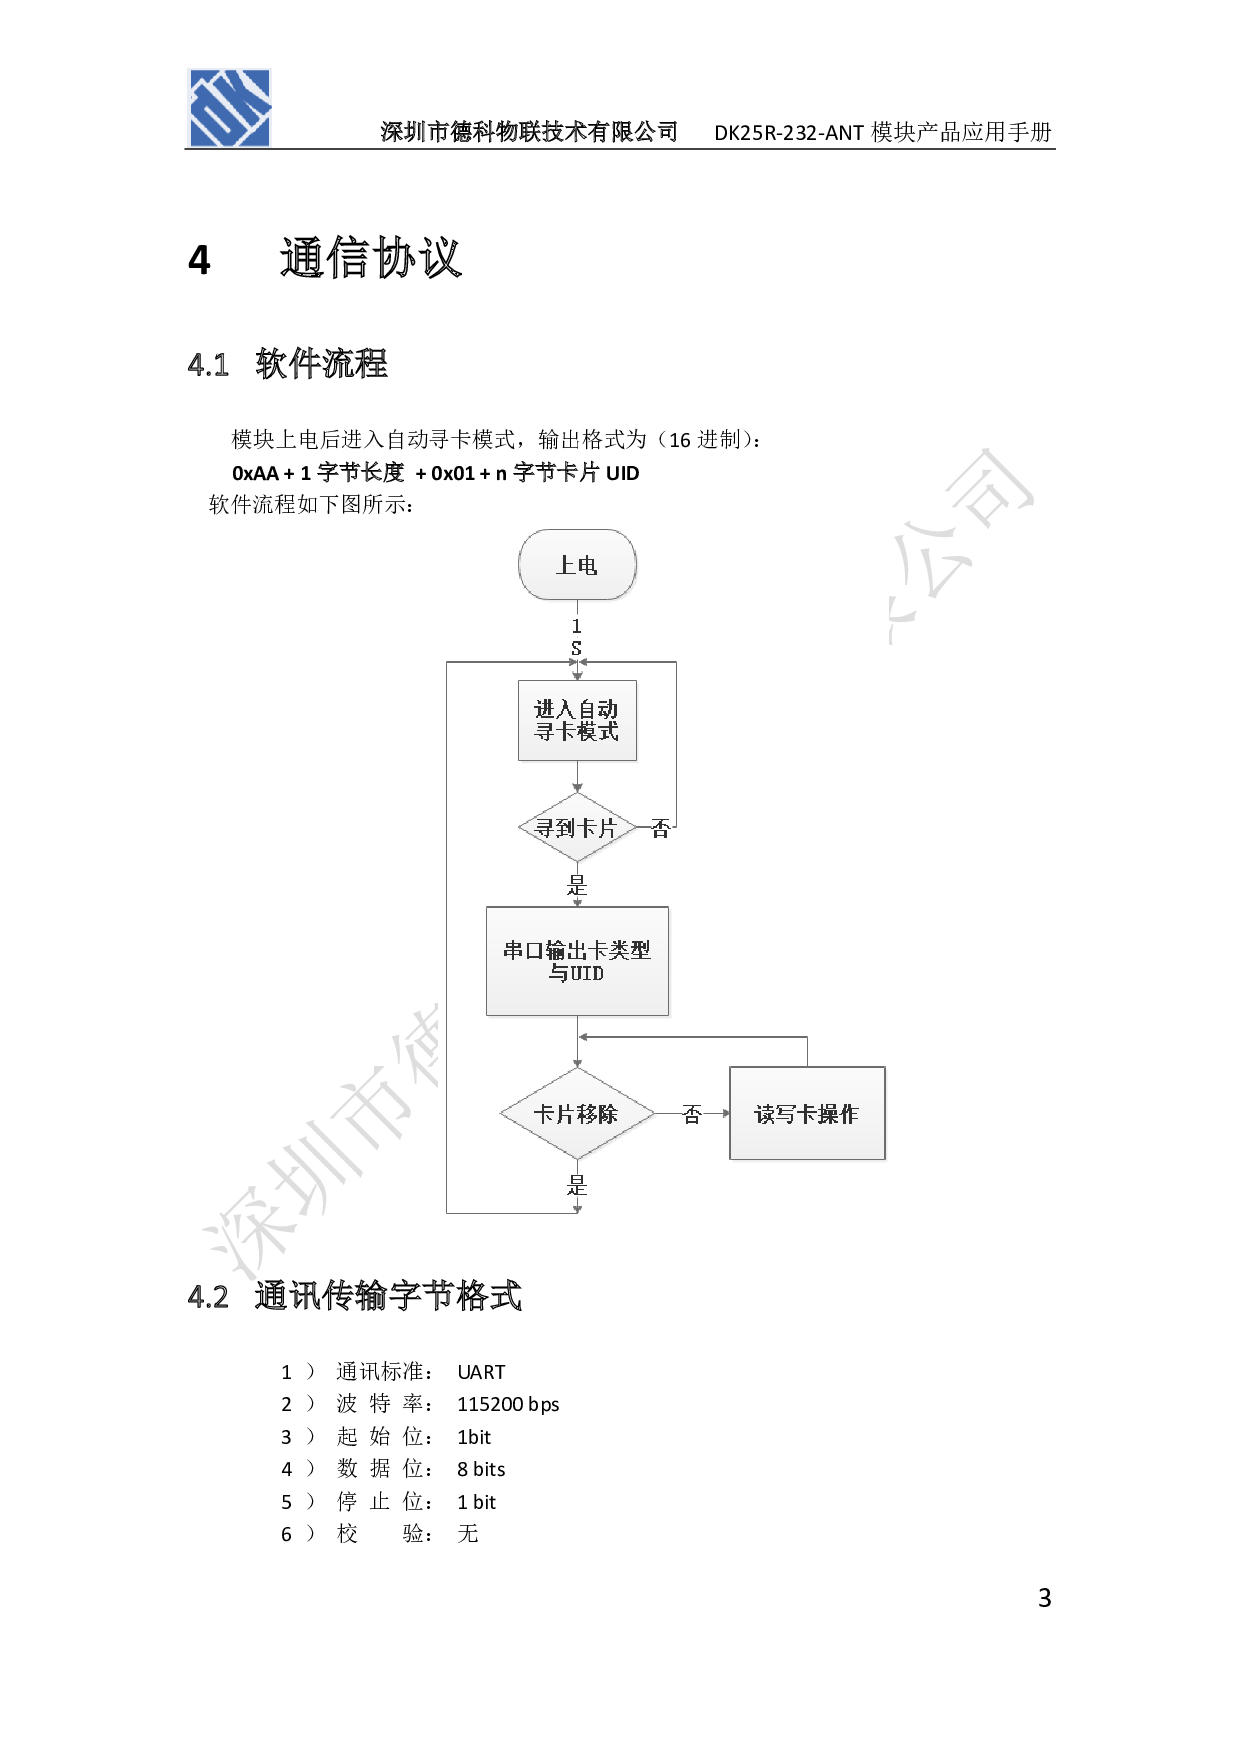 串口读卡模块 读写模块 串口指令NFC/RFID读写卡模块 UART串口图片